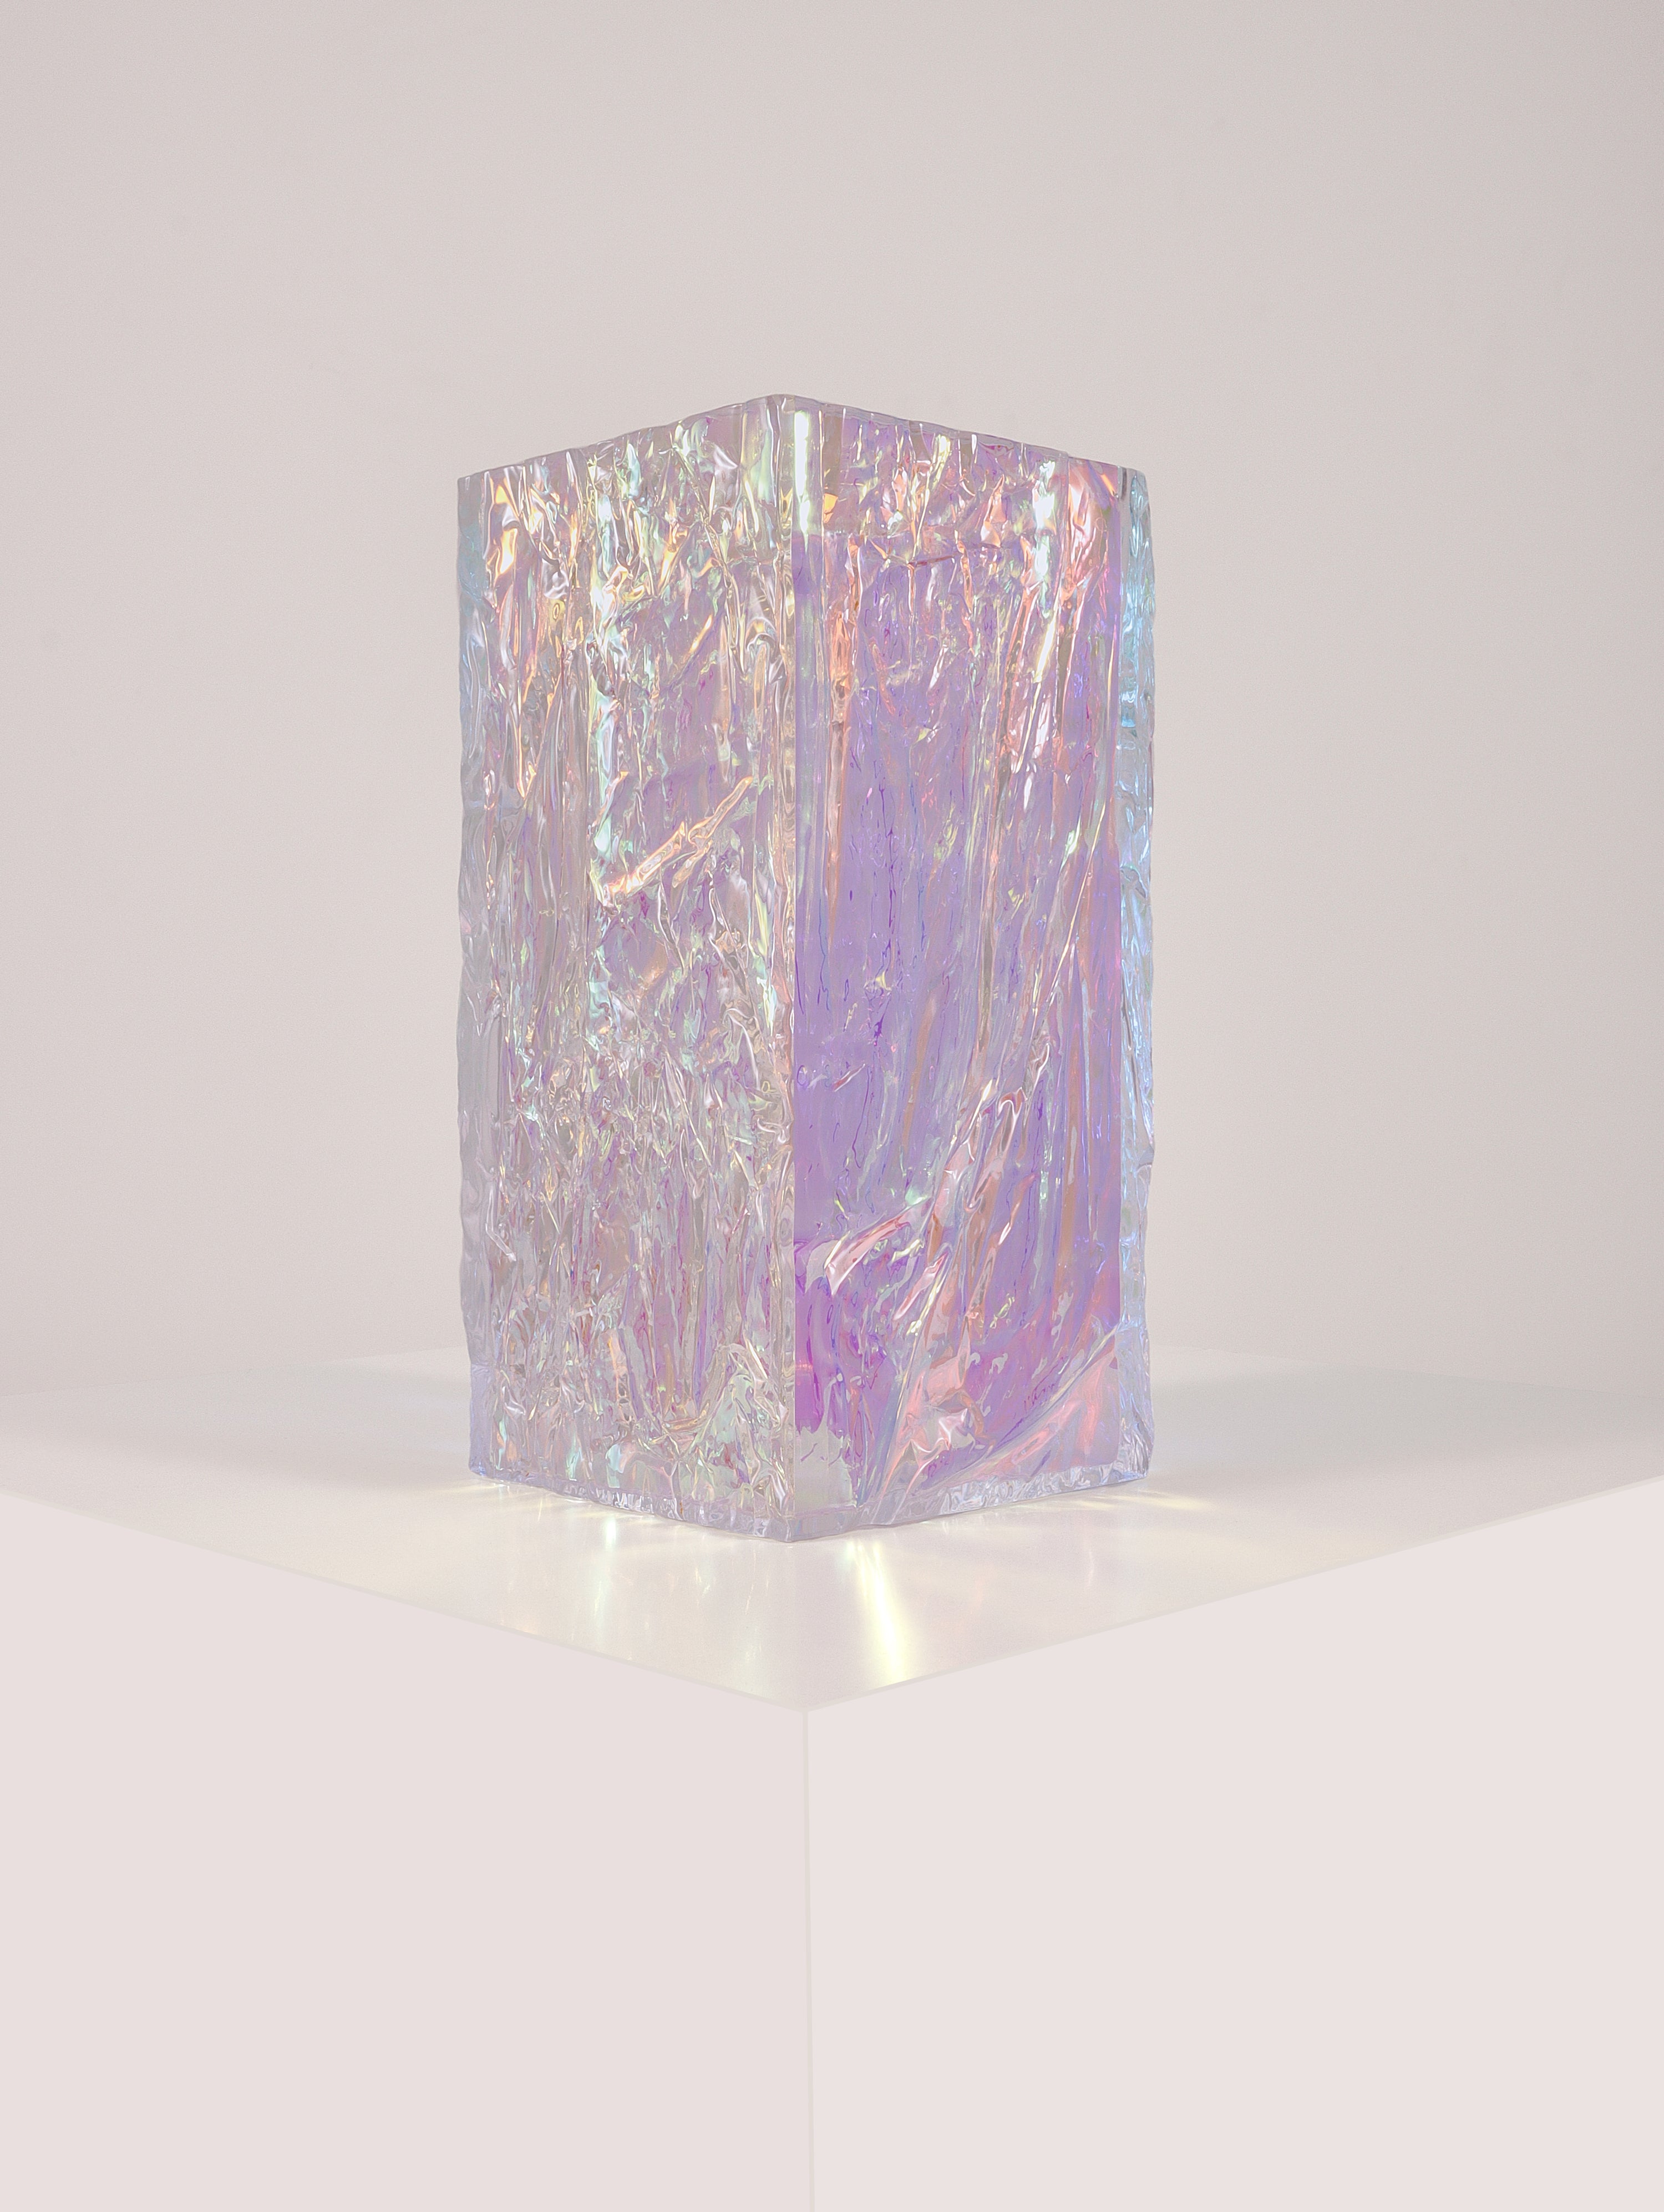 Crushed ice Iridescent vase